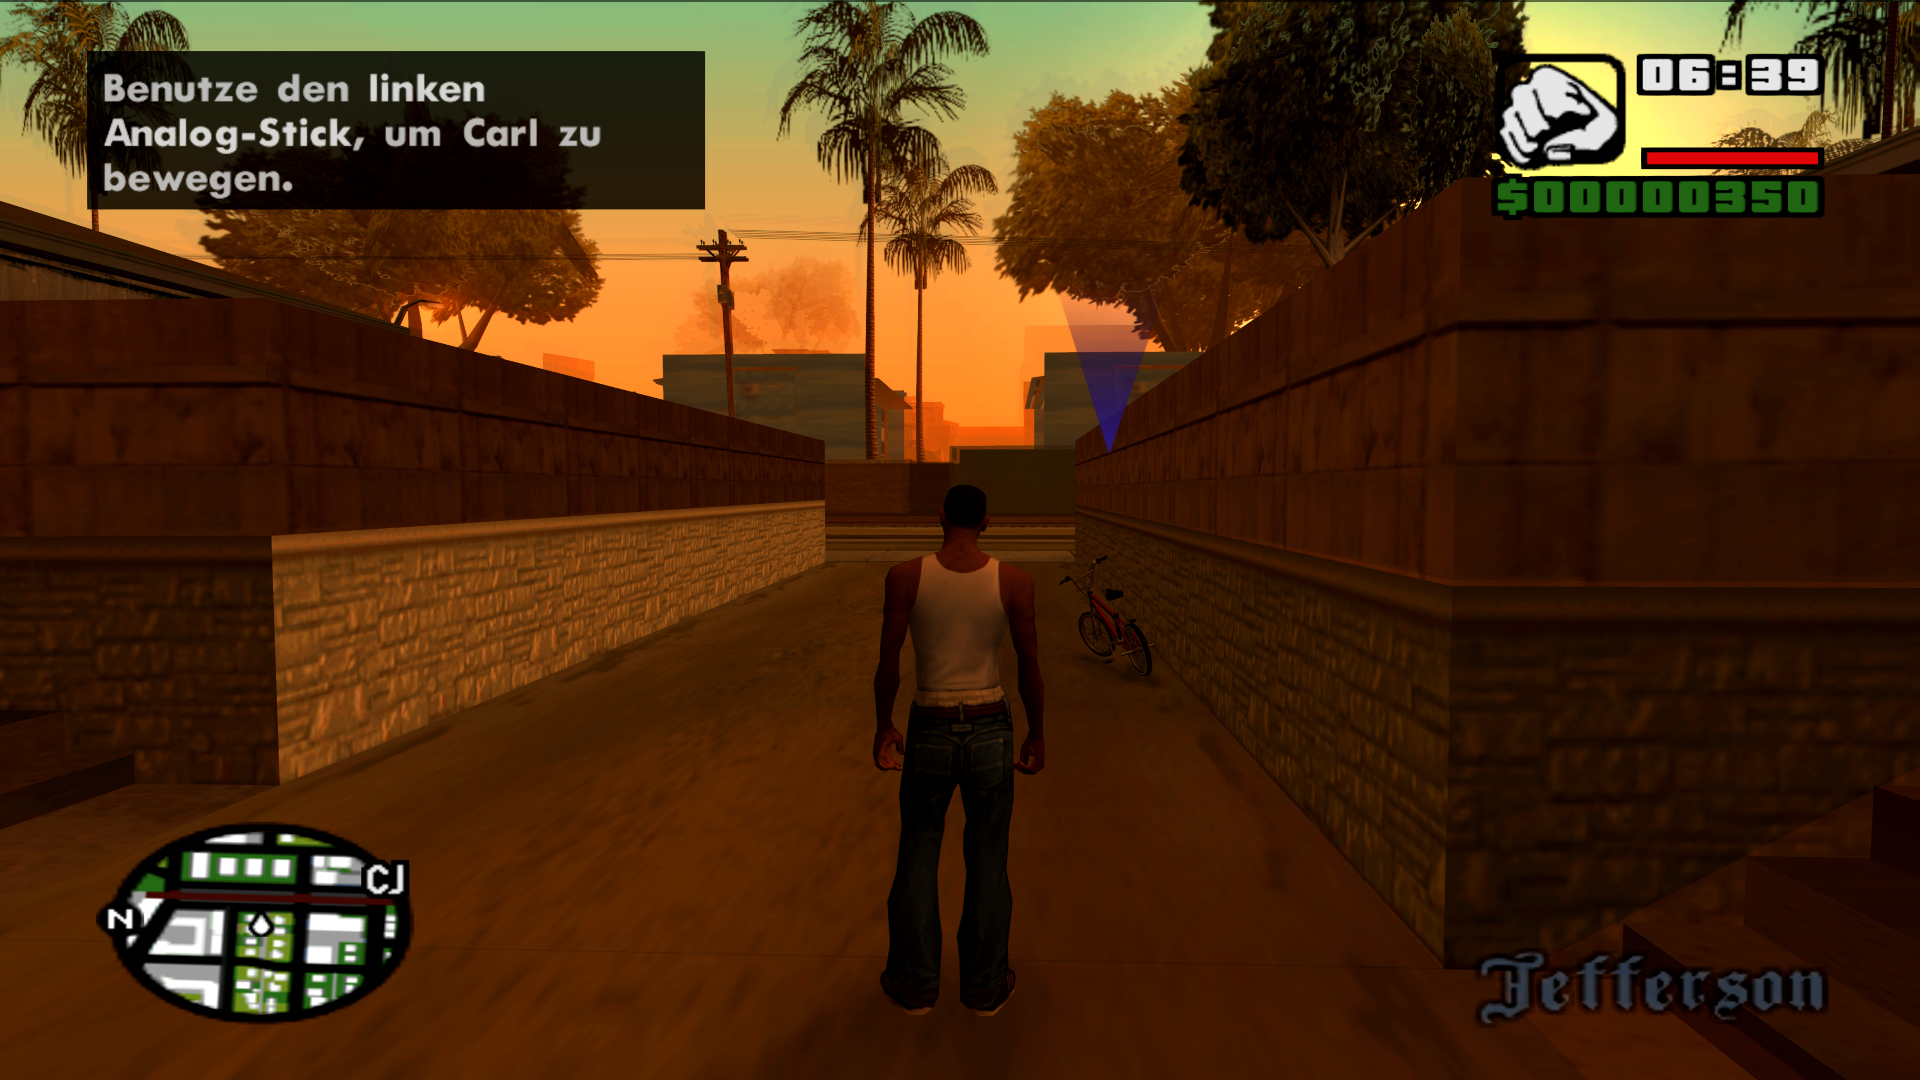 GTA San Andreas screen resolution fix